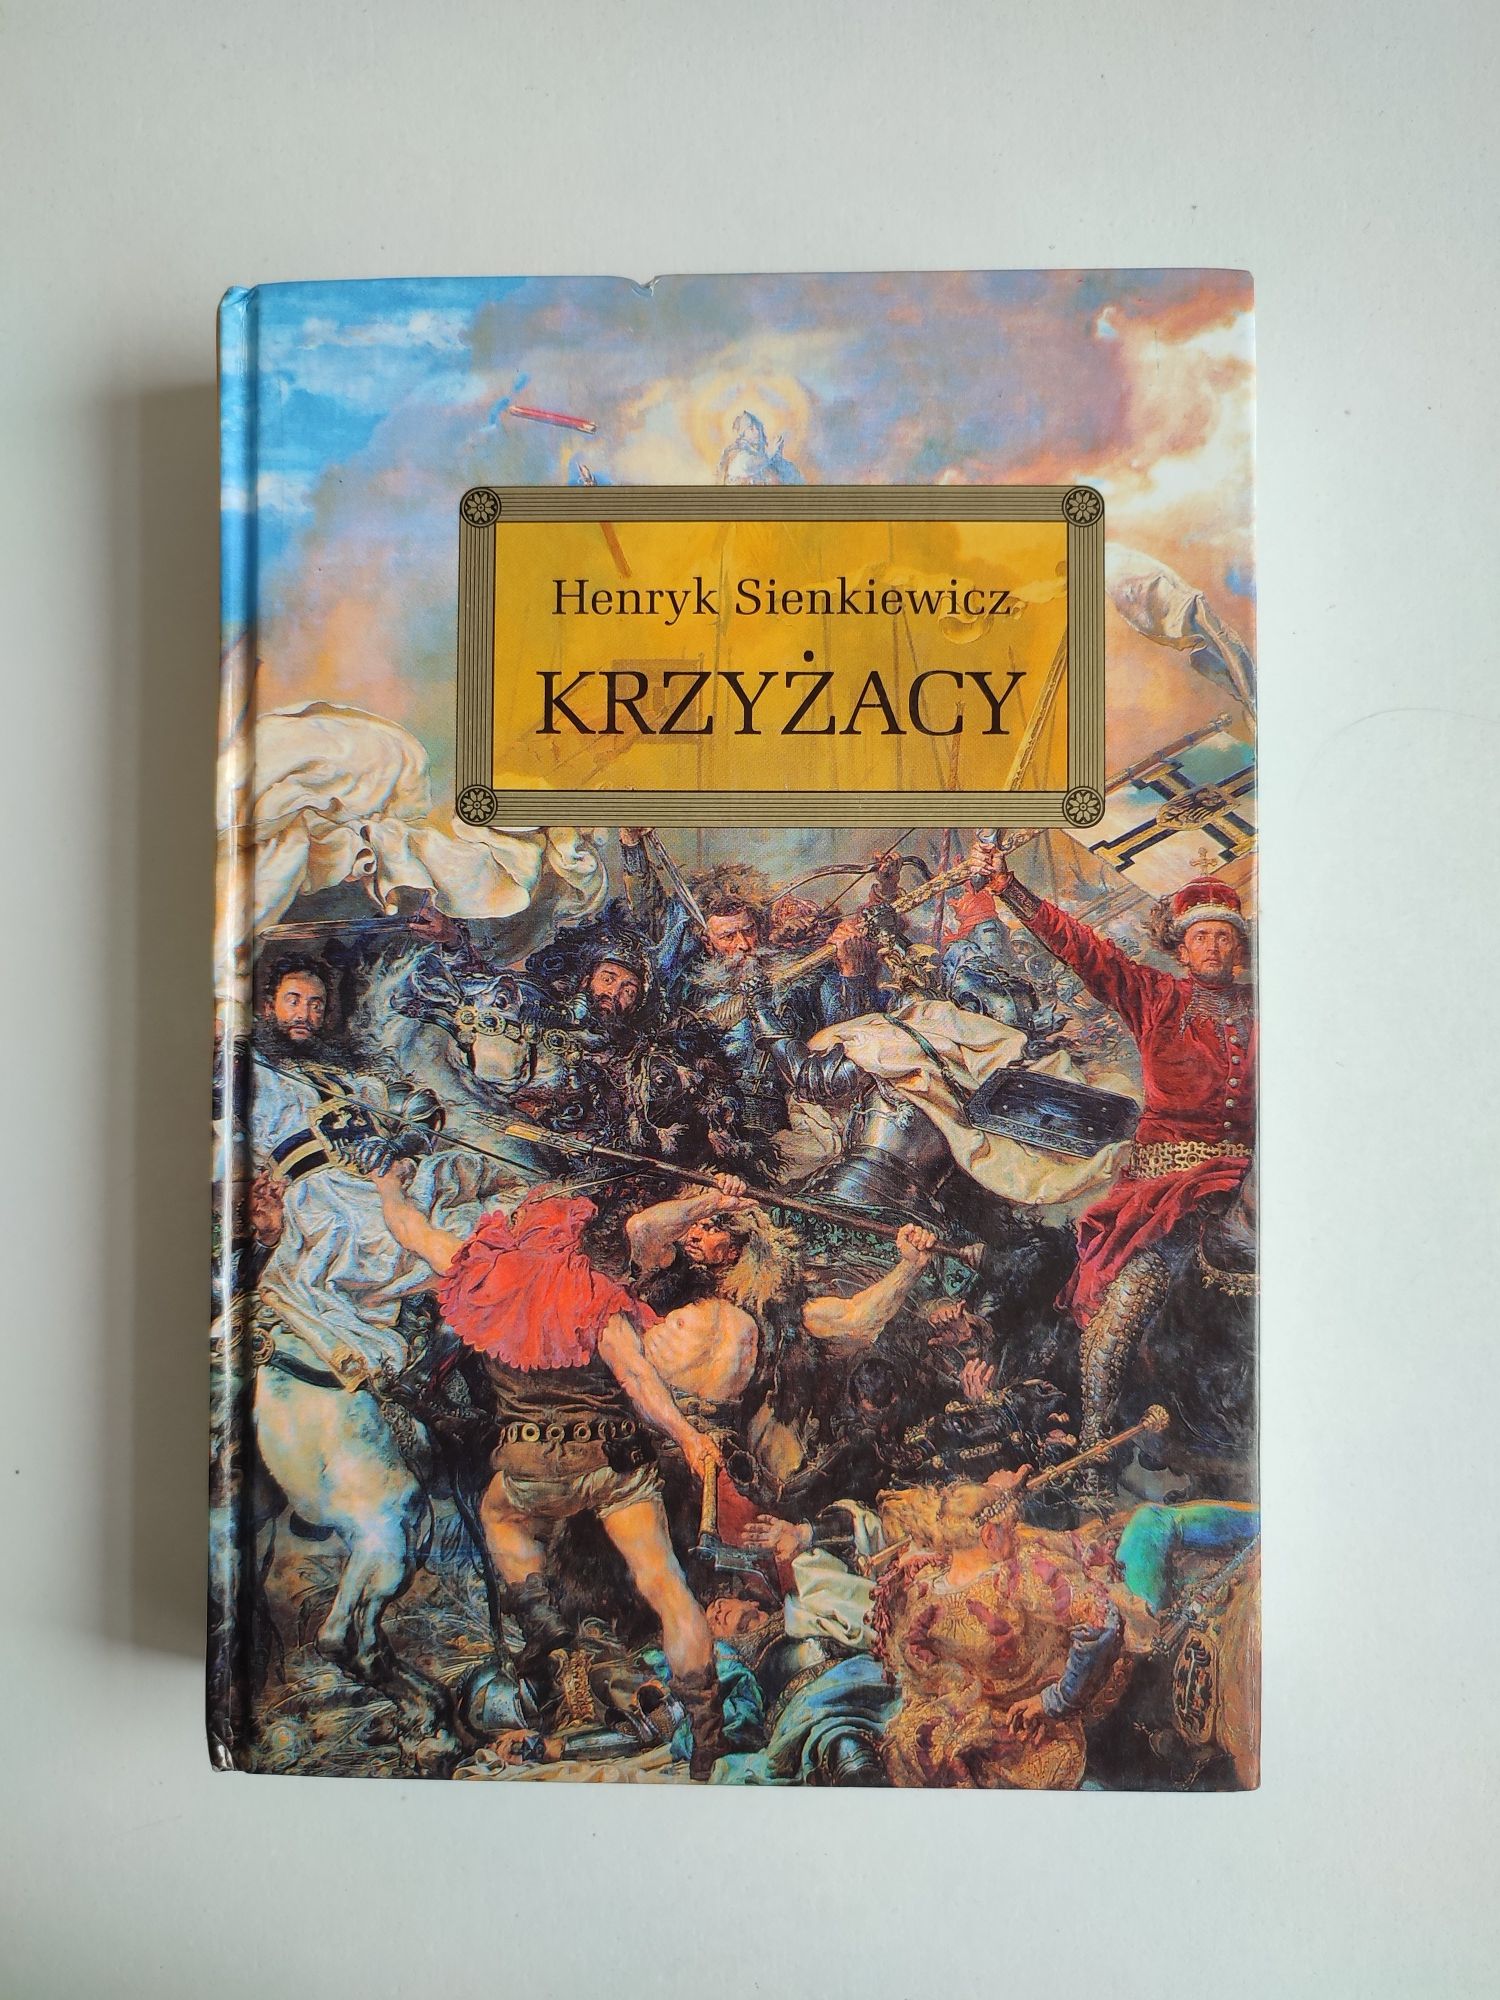 Książka "Krzyżacy" Henryk Sienkiewicz